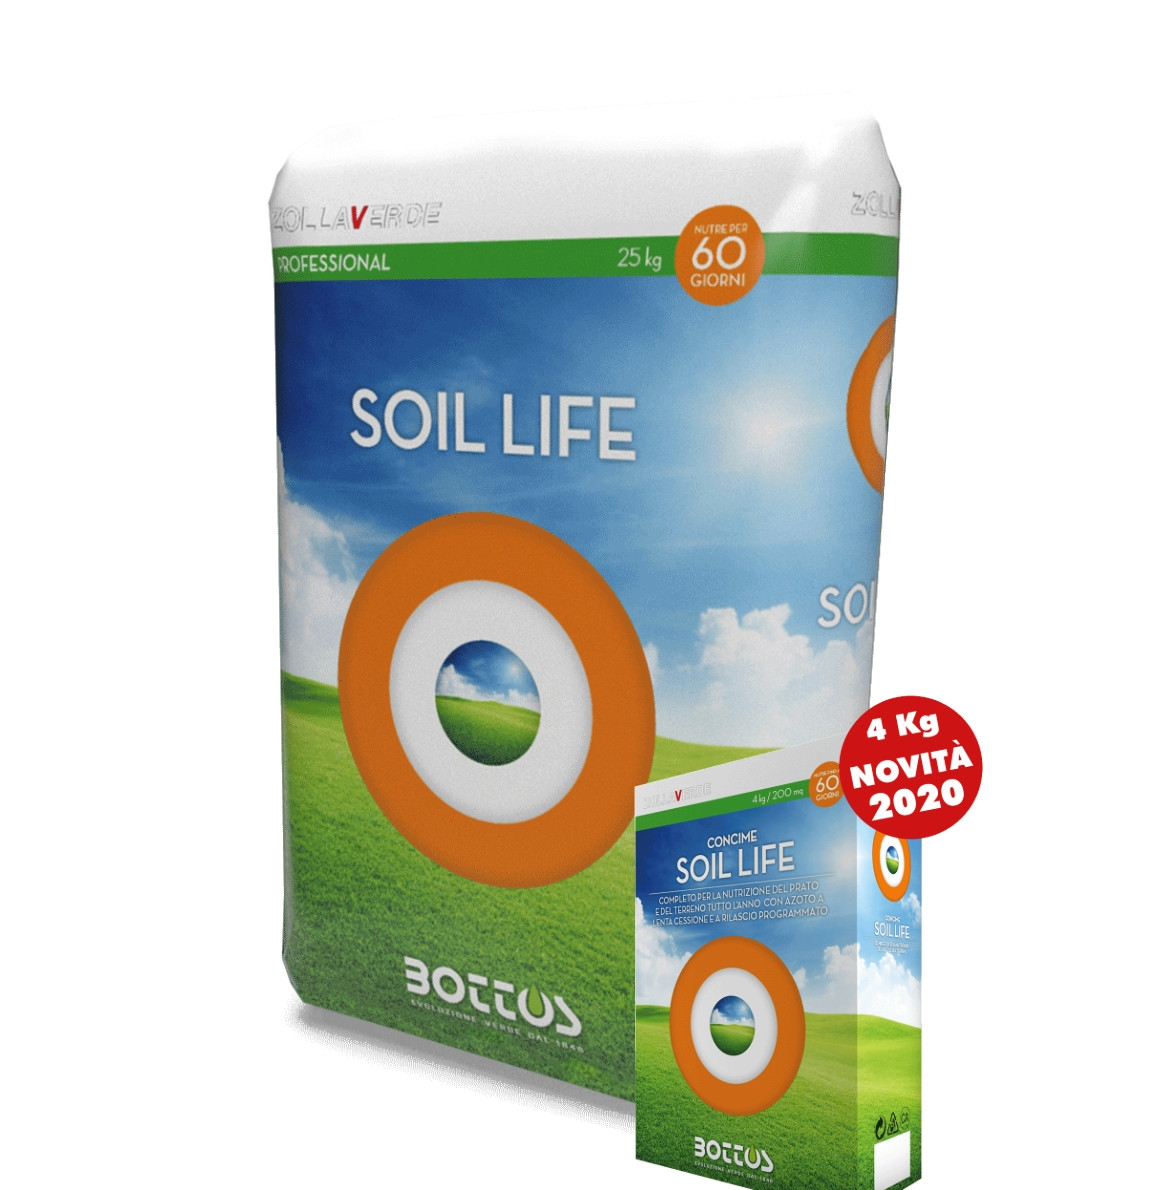 soil life 4 kg img